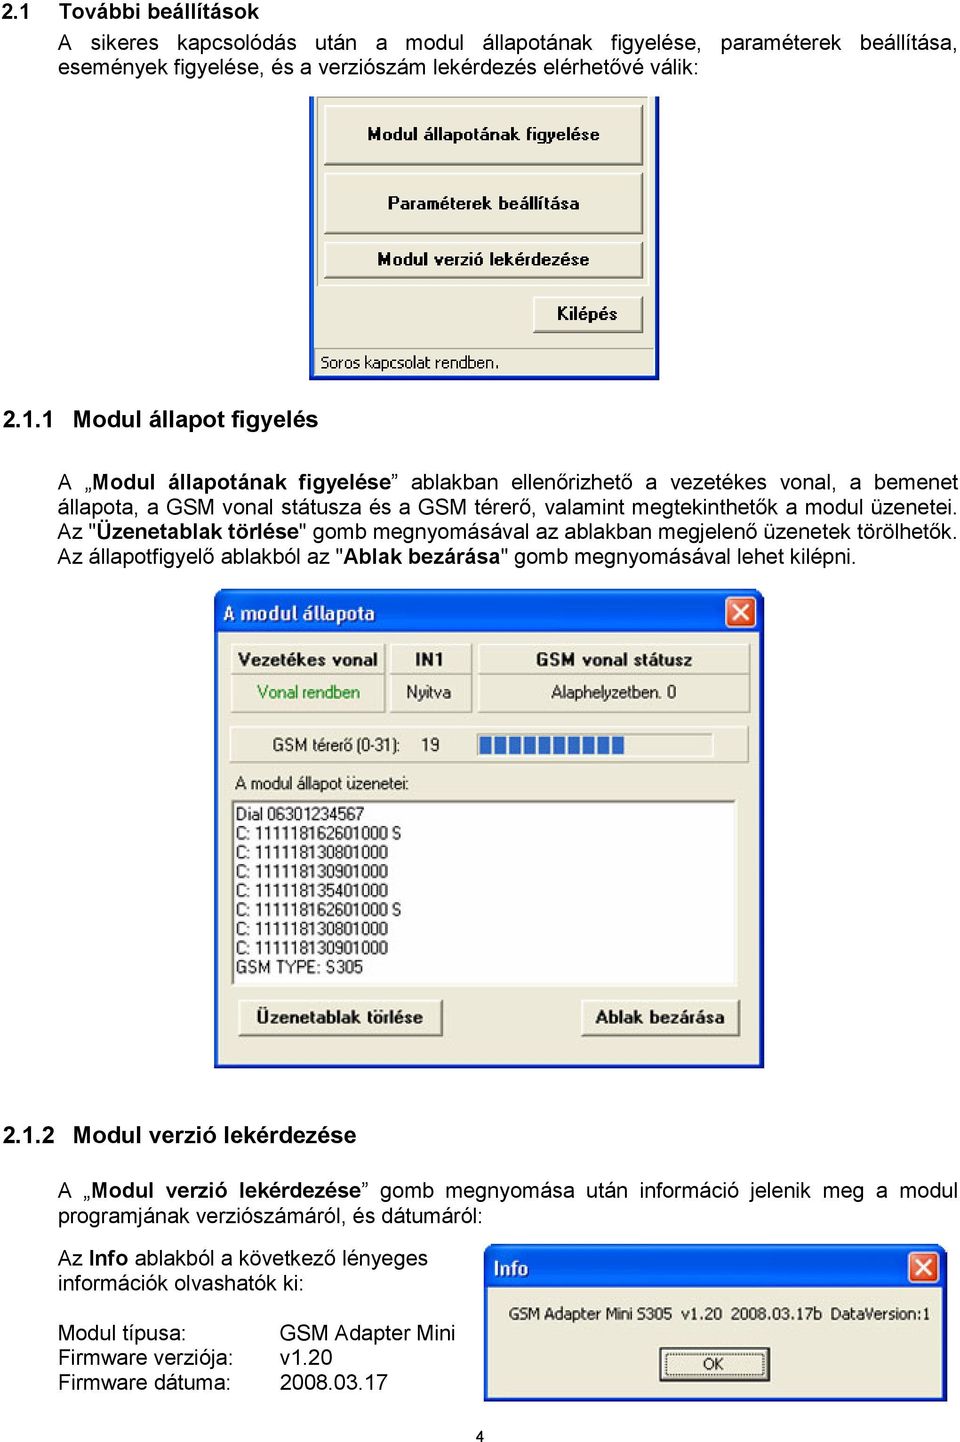 2 Modul verzió lekérdezése A Modul verzió lekérdezése gomb megnyomása után információ jelenik meg a modul programjának verziószámáról, és dátumáról: Az Info ablakból a következő lényeges információk